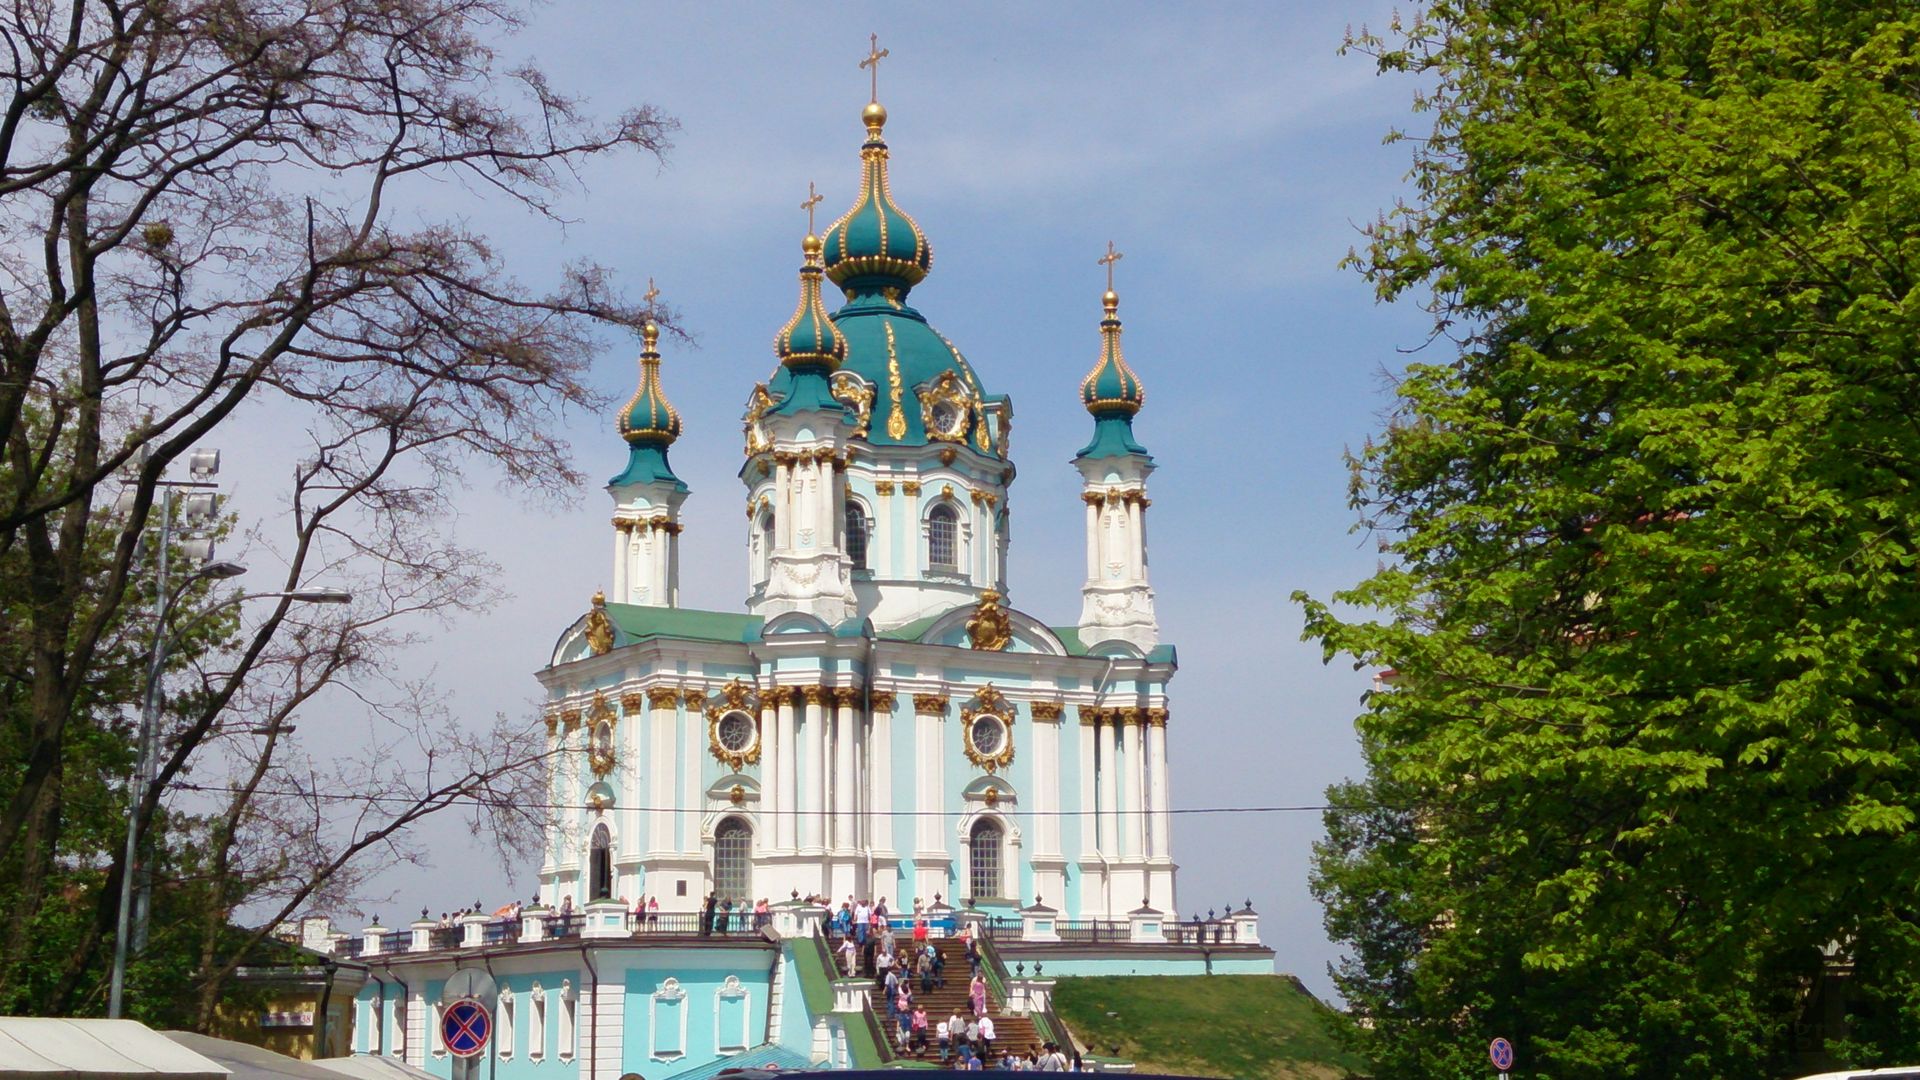 Андреевская церковь в Киеве, которая была сооружена по проекту Бартоломео Растрелли по приказу императрицы Елизаветы I в середине XVIII века.